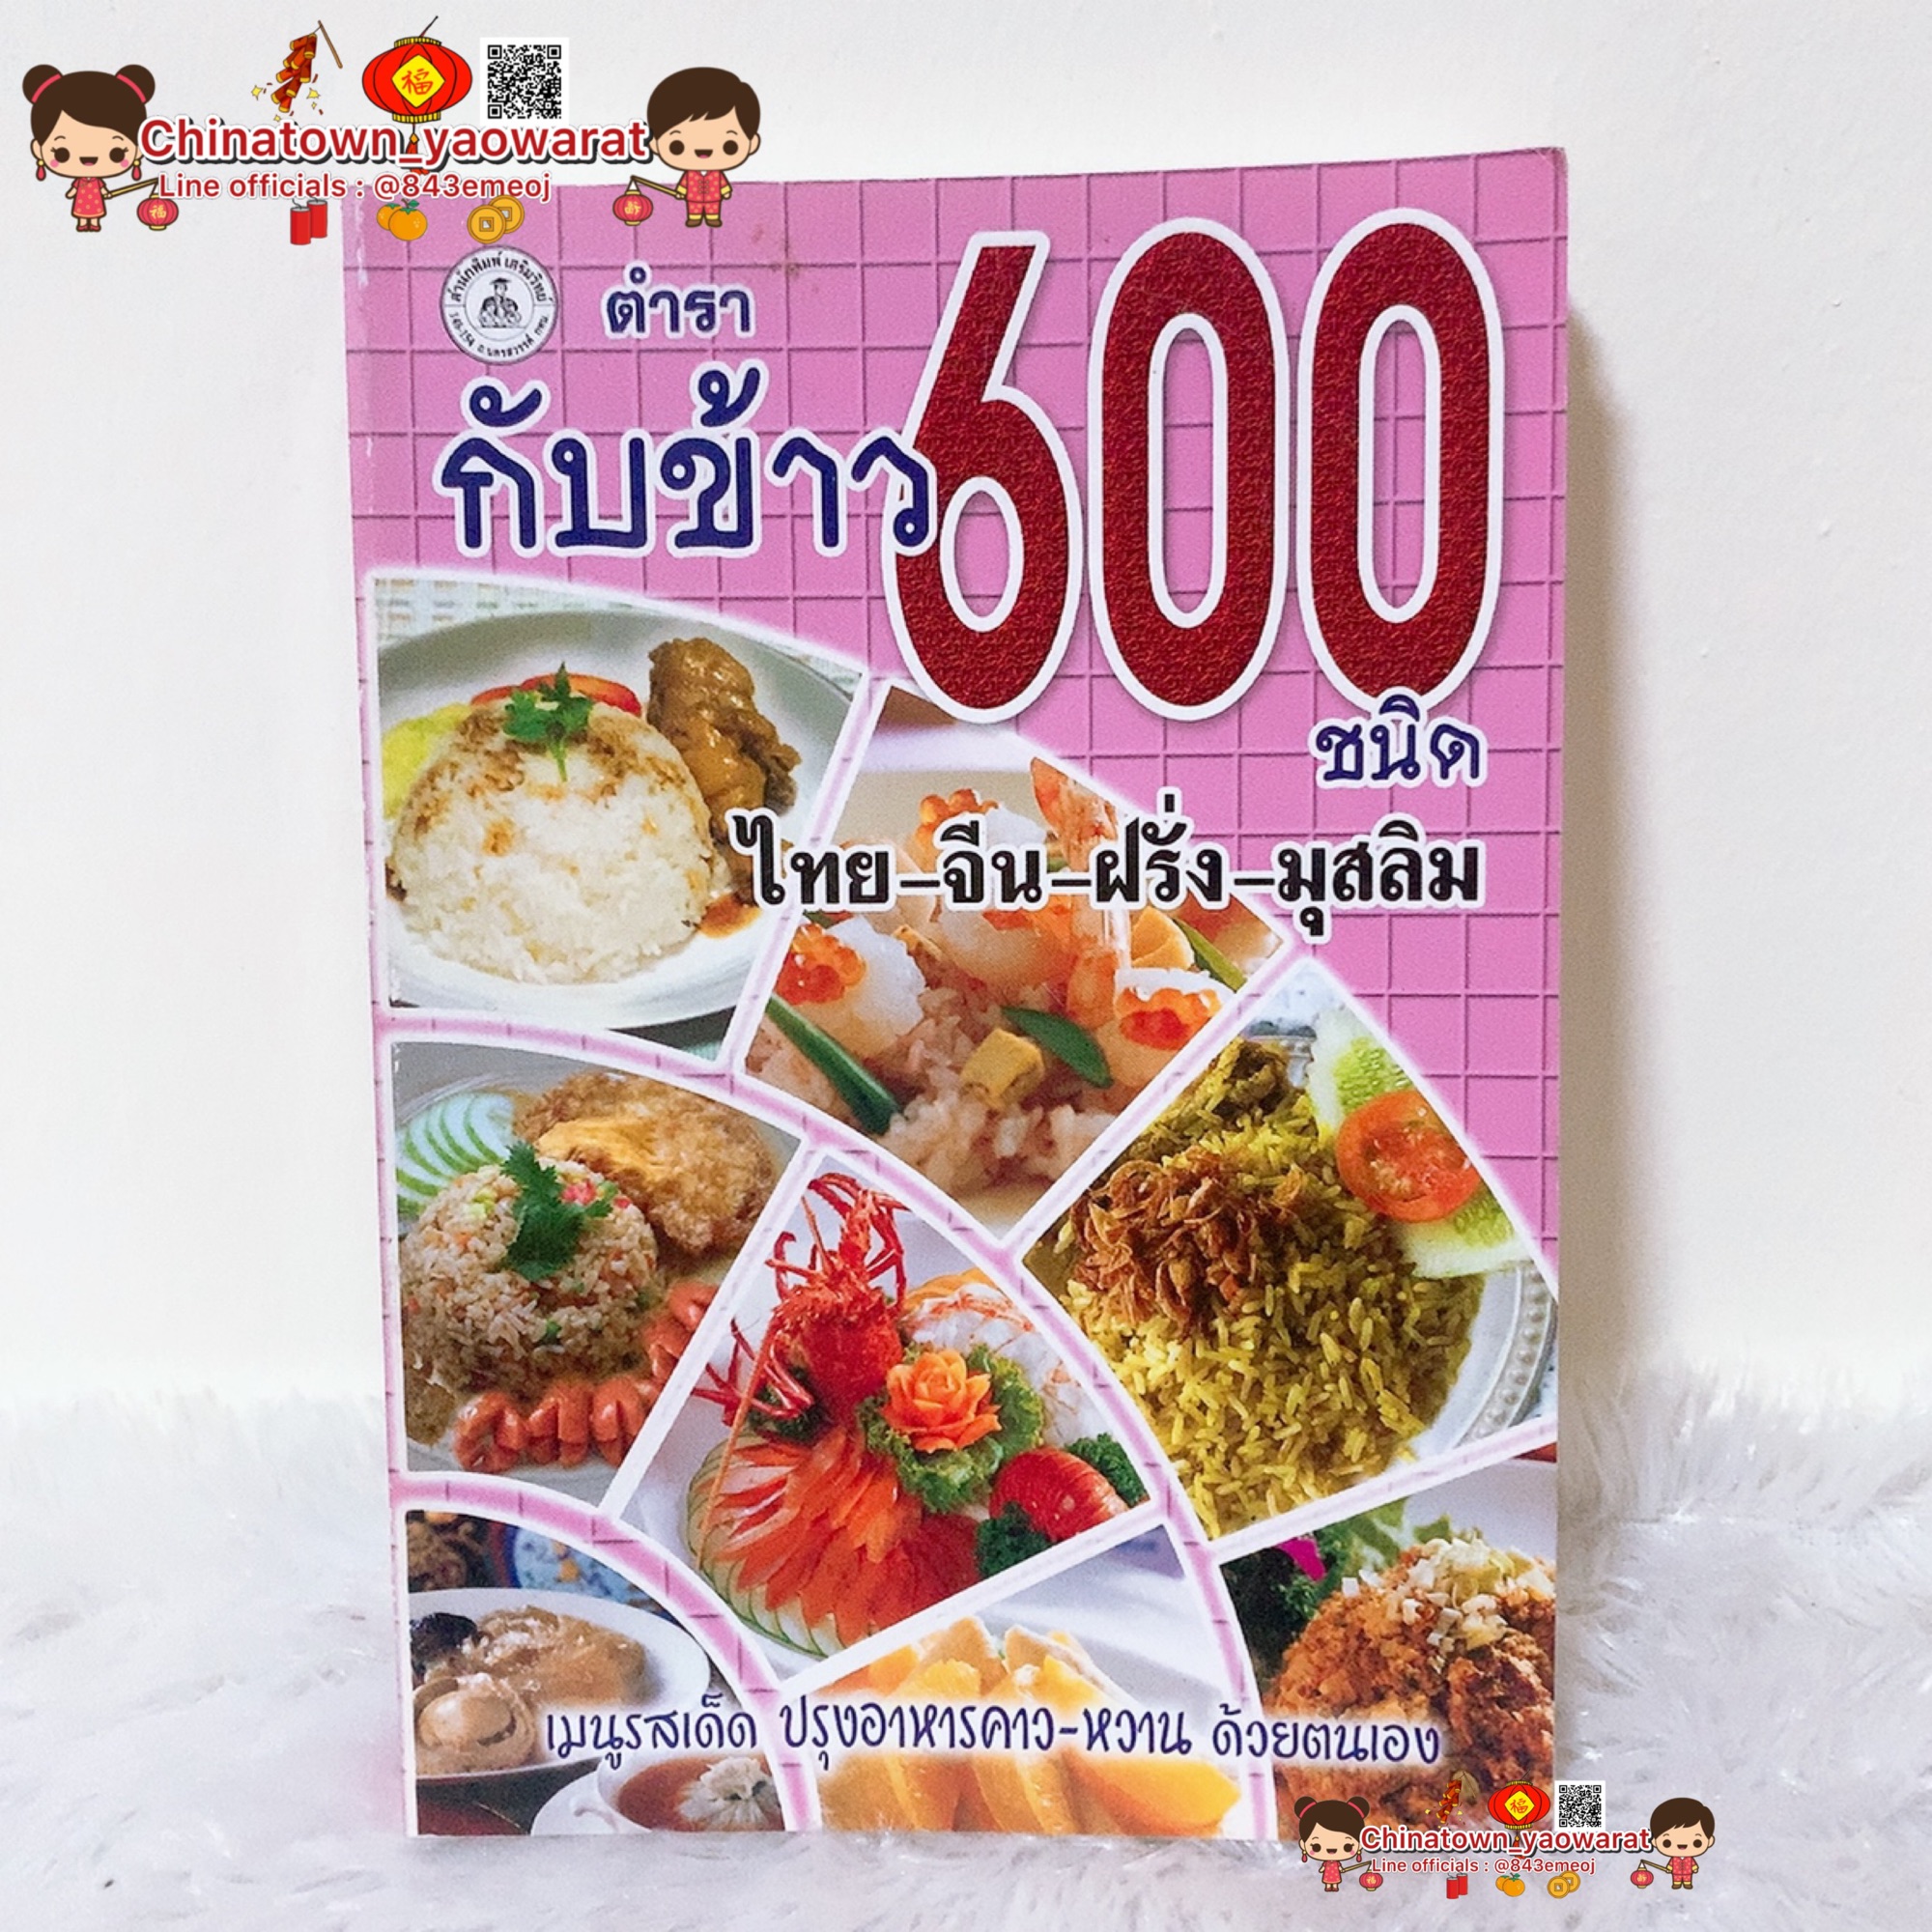 หนังสือ ตำรากับข้าว 600 ชนิด ไทย-จีน-ฝรั่ง-มุสลิม🍲 เรียนทำอาหาร เชฟ ทำกับข้าว สูตรอาหาร สูตรกับข้าว สูตรก๋วยเตี๋ยว